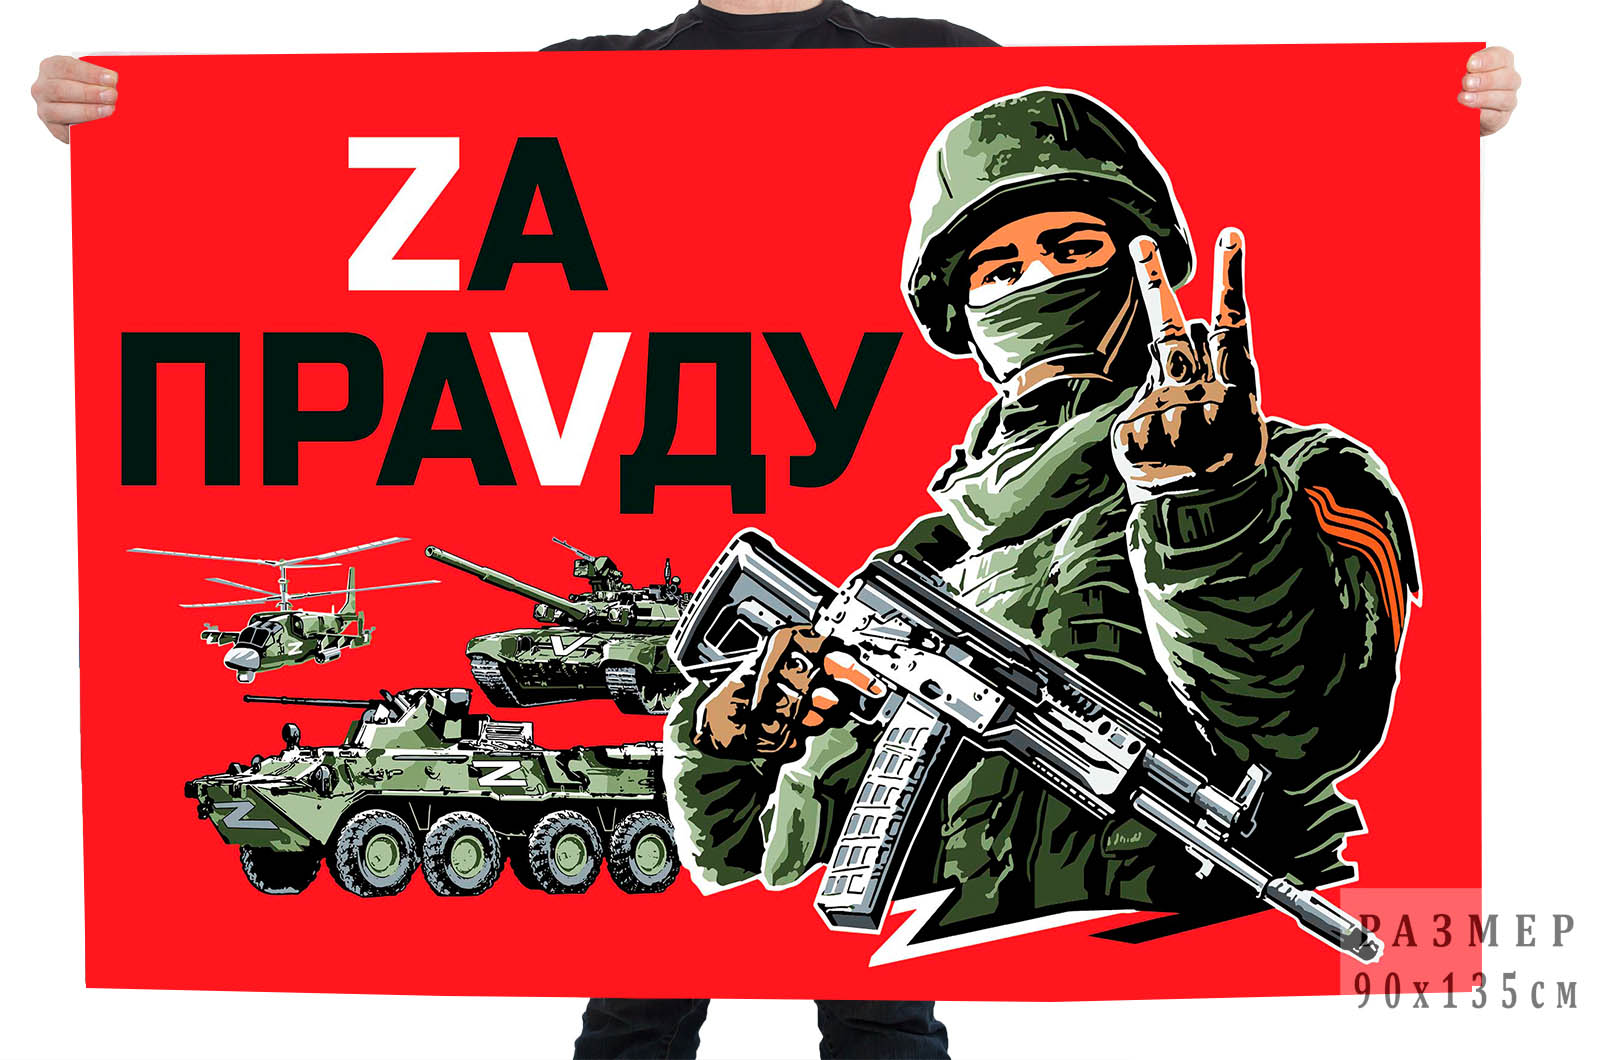 Флаг с надписью "Zа праVду"